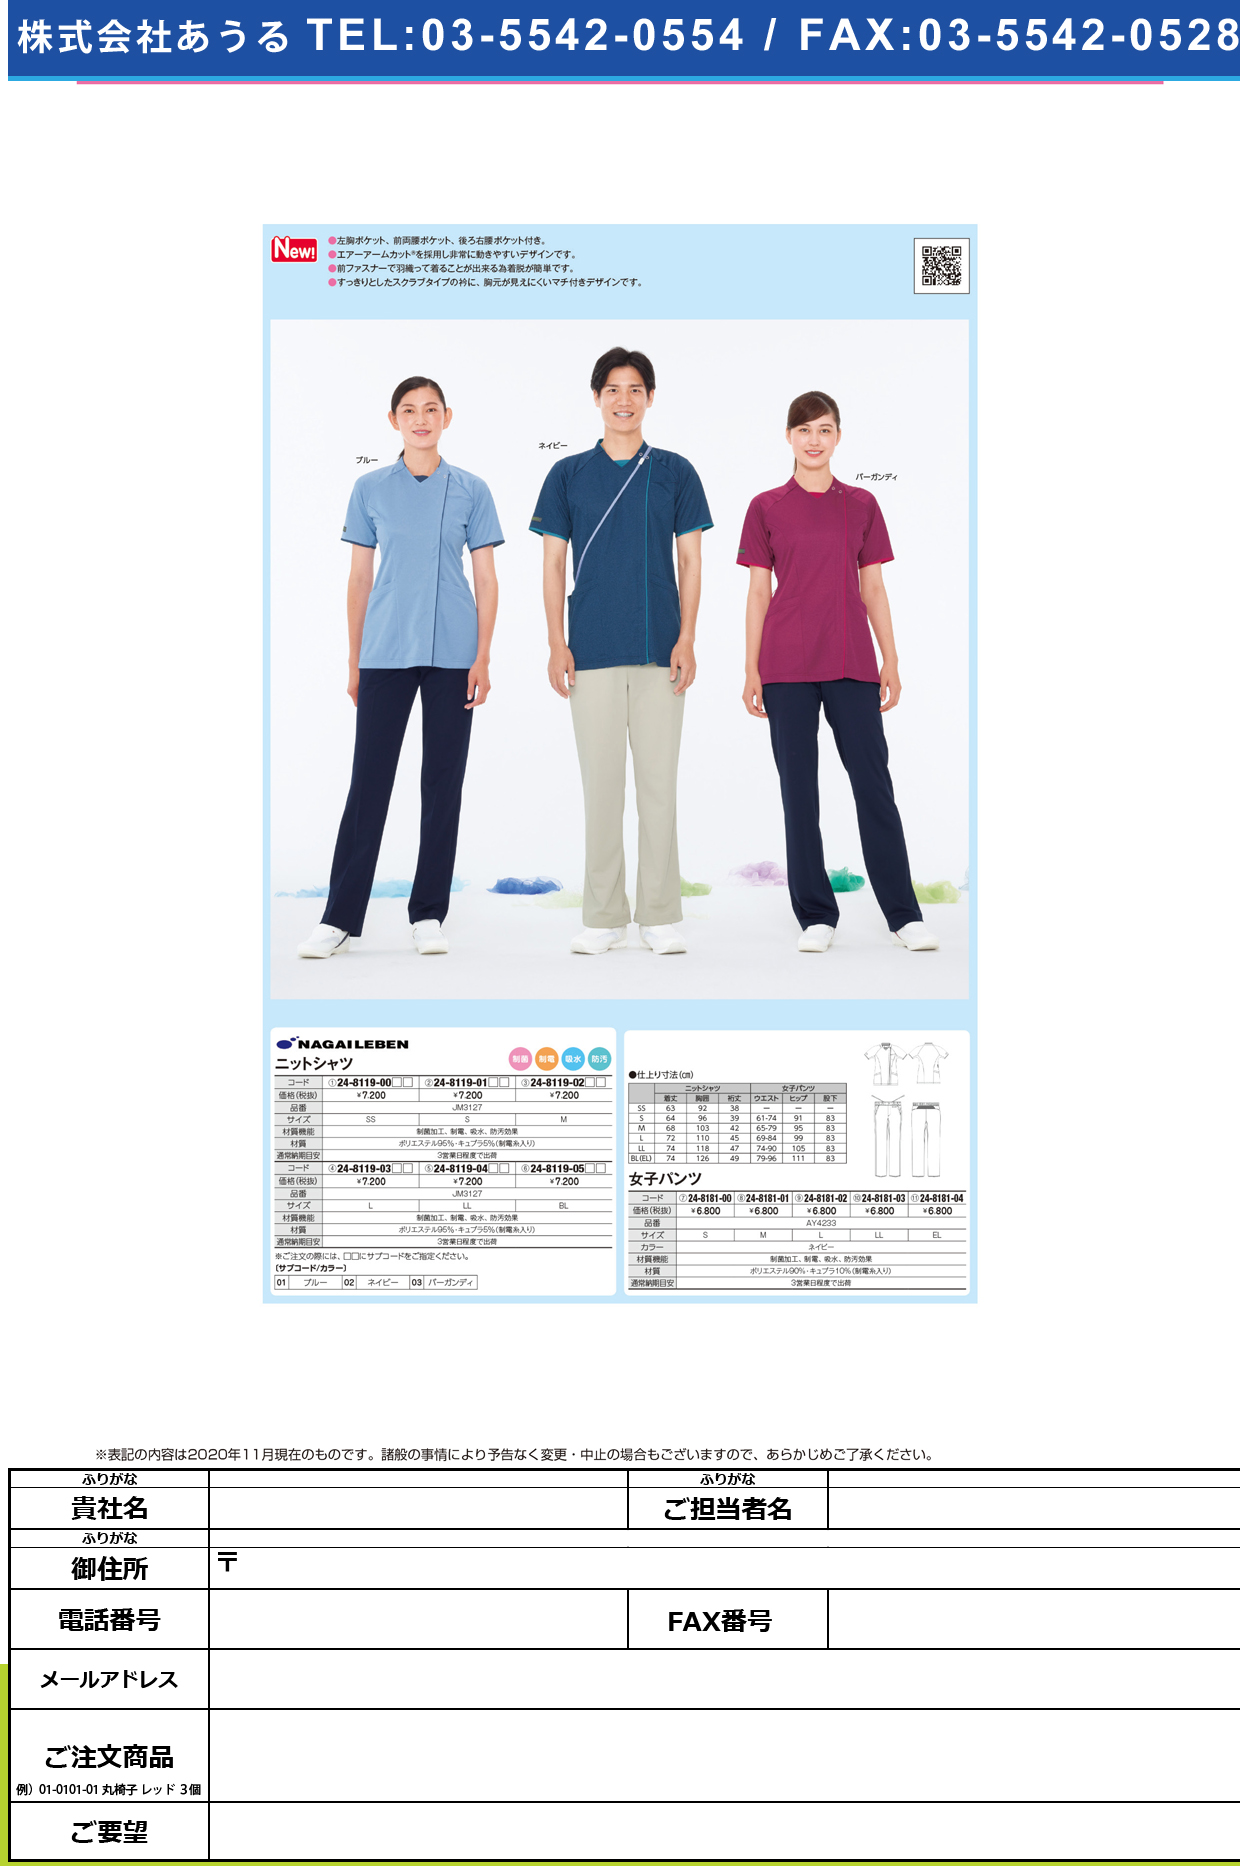 ニットシャツ JM-3127(BL)JM-3127(BL)ネイビー(24-8119-05-02)【ナガイレーベン】(販売単位:1)